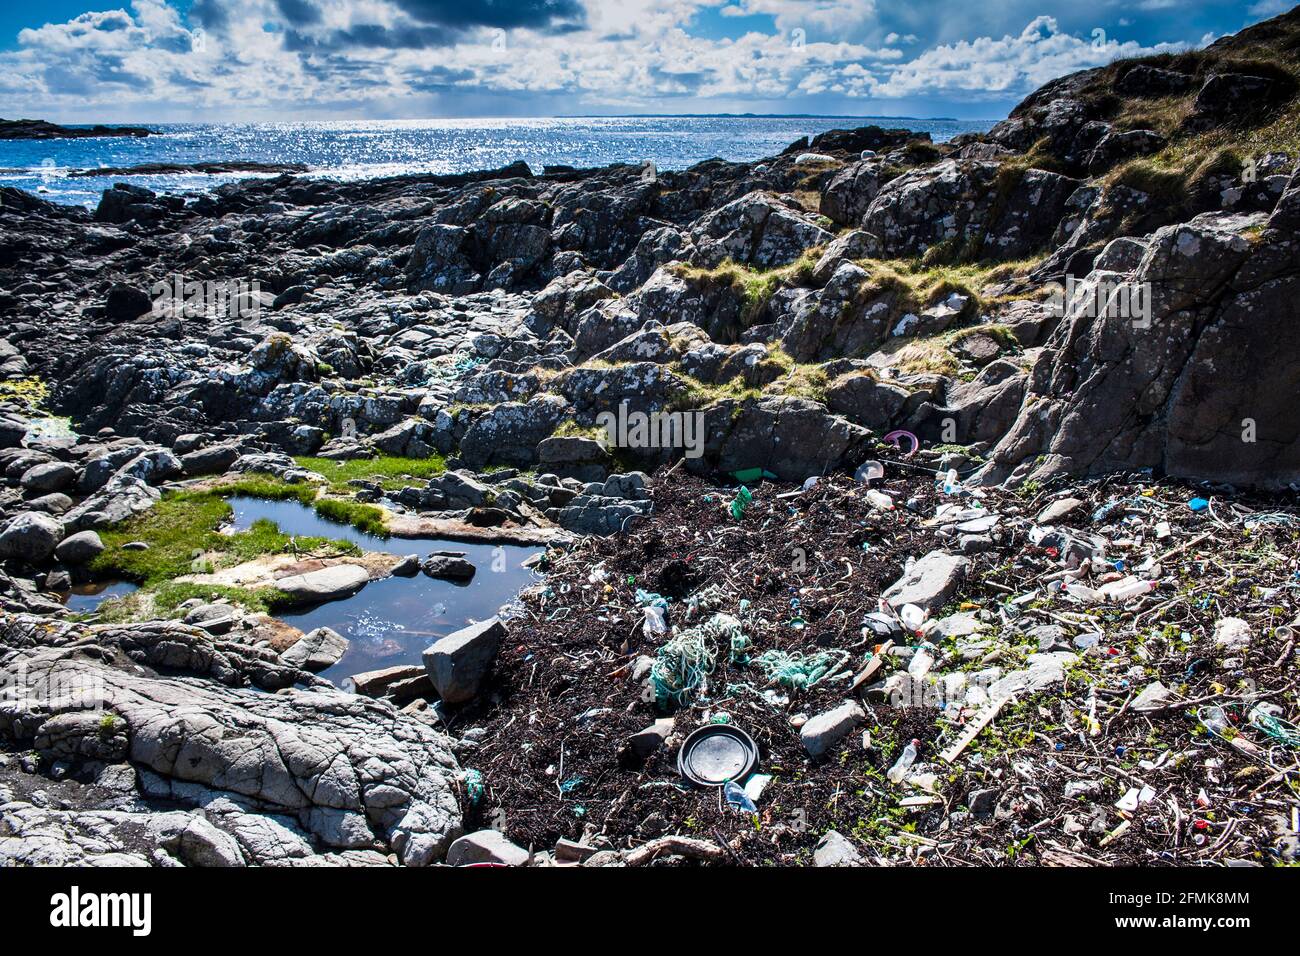 Müll, Plastikmüll, der an der felsigen Küste im Nordwesten Schottlands, Ardnamurchan Point, aufgespült wird. Stockfoto